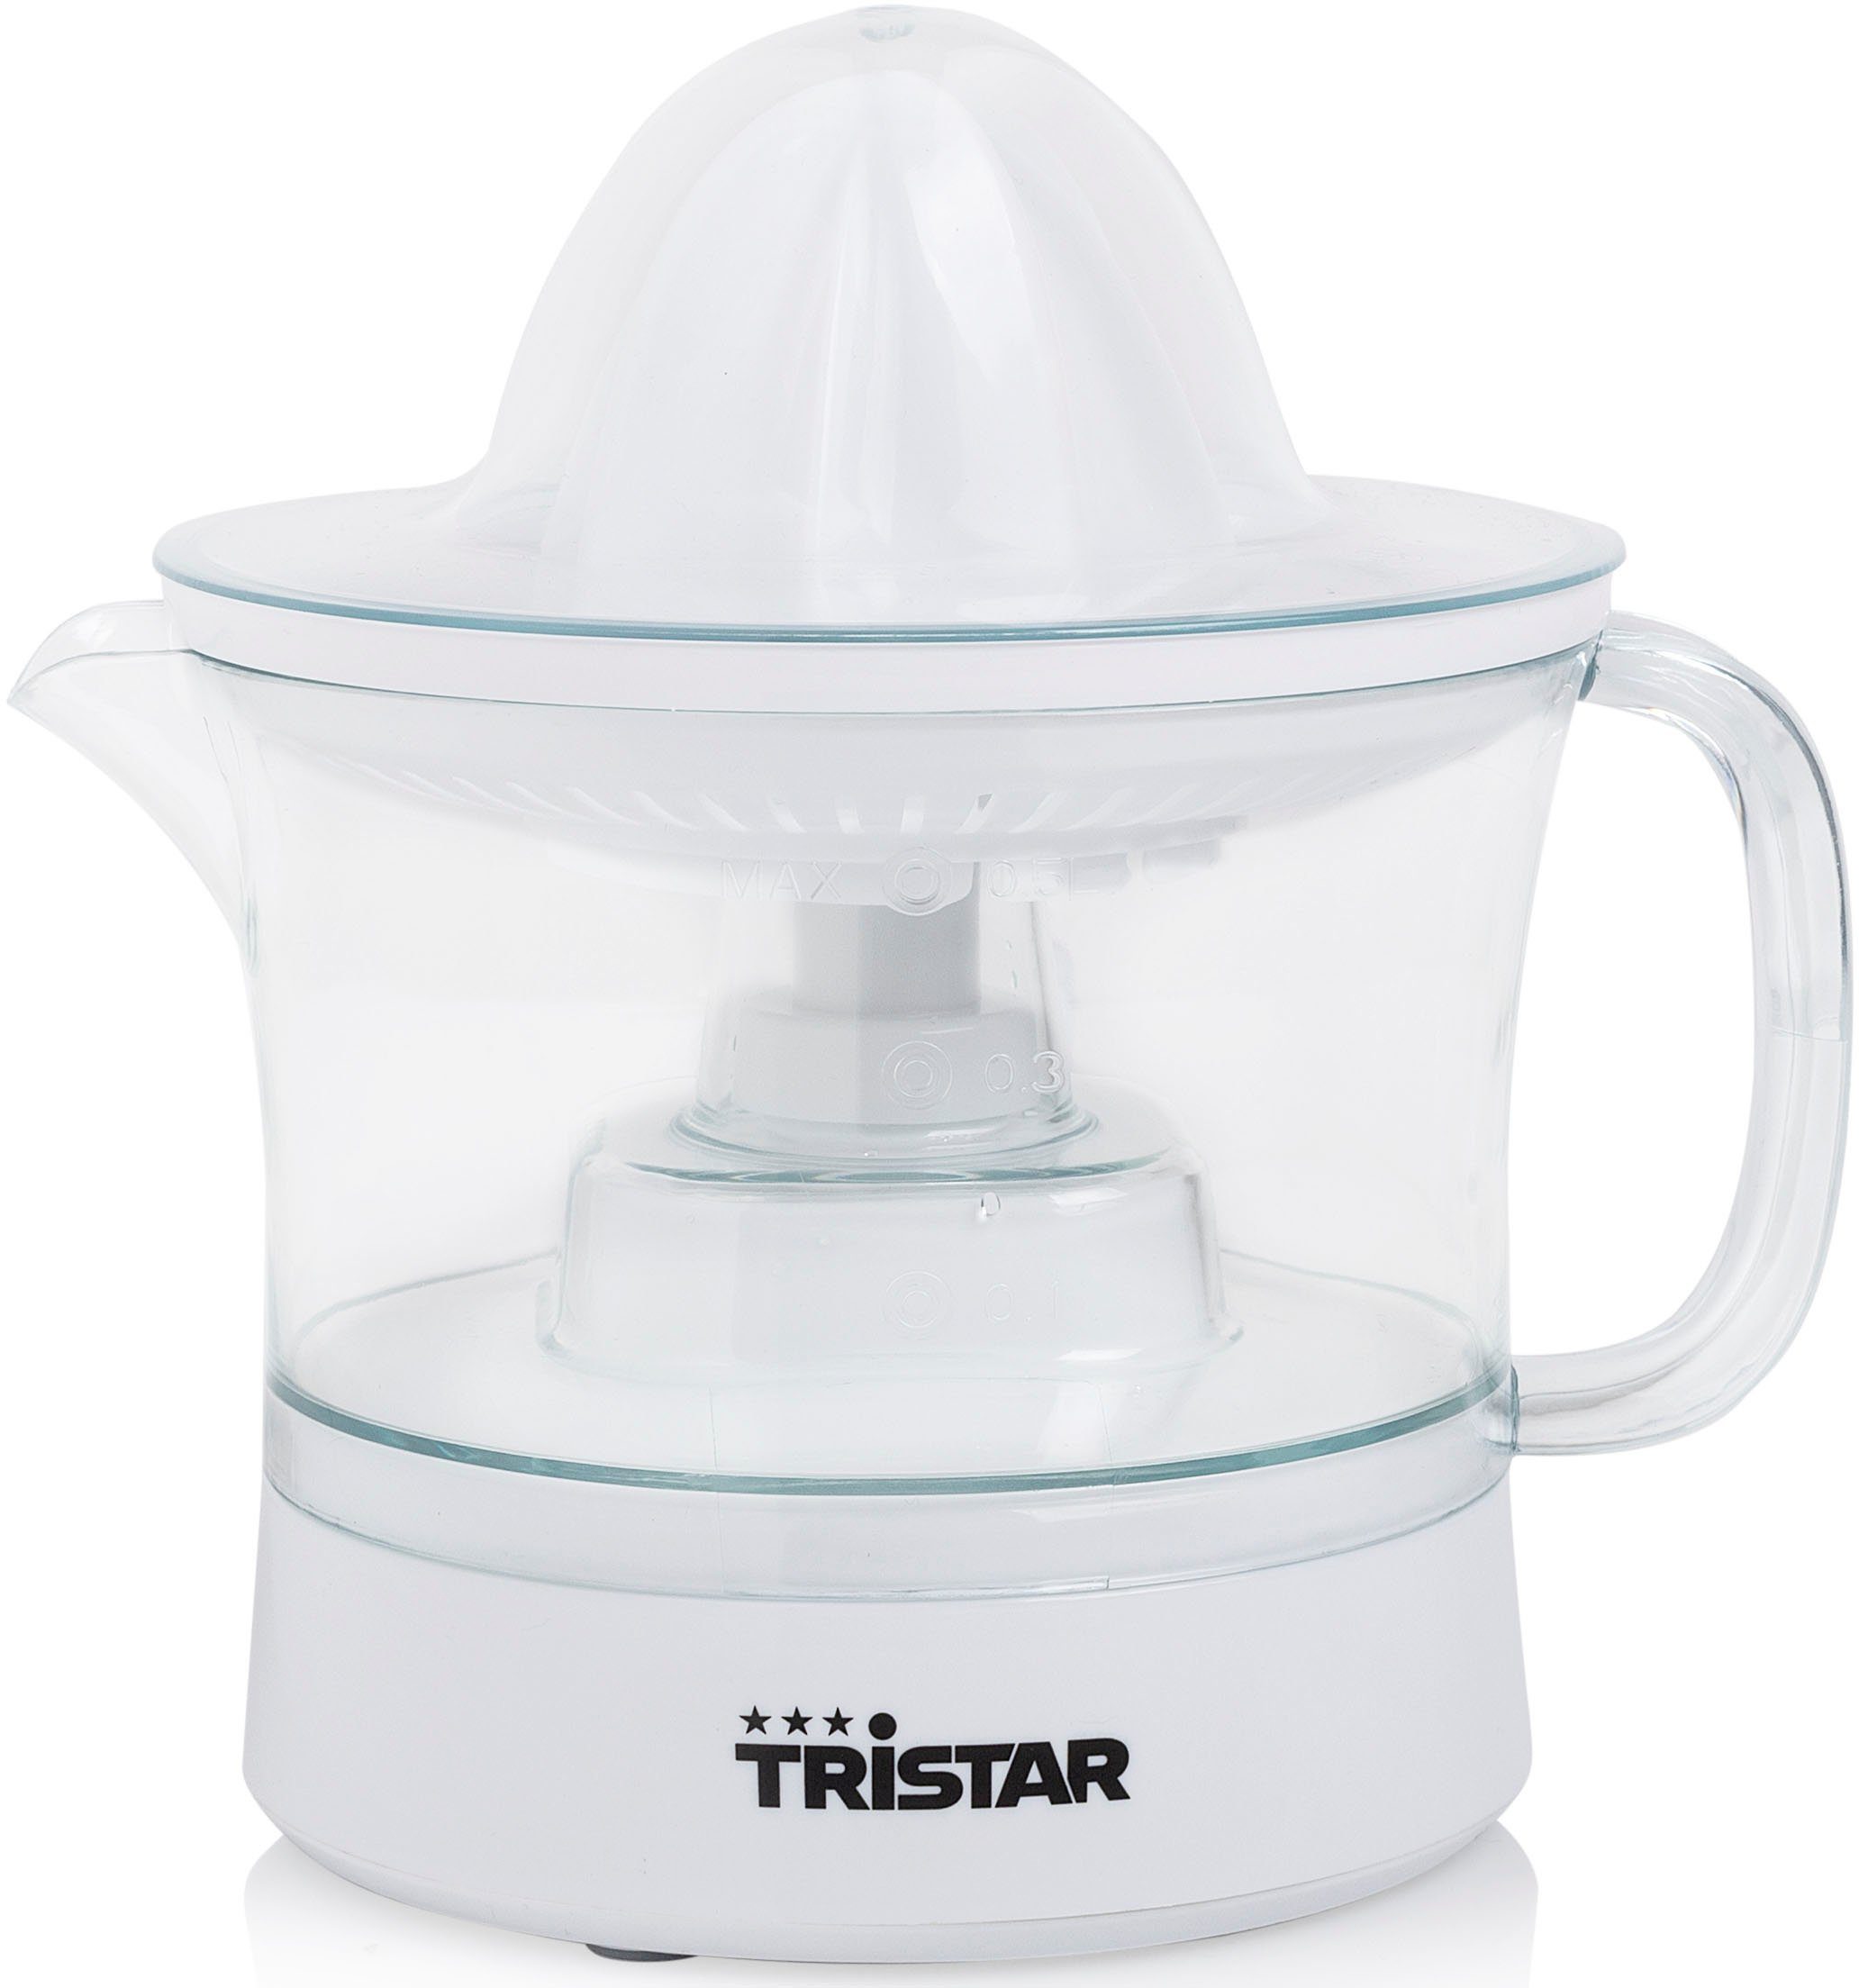 Tristar Zitruspresse Inhalt, 2 25 Presskegel-Größen Liter CP-3005, 25 Citrusfrucht, für W, 0,5 jede Watt